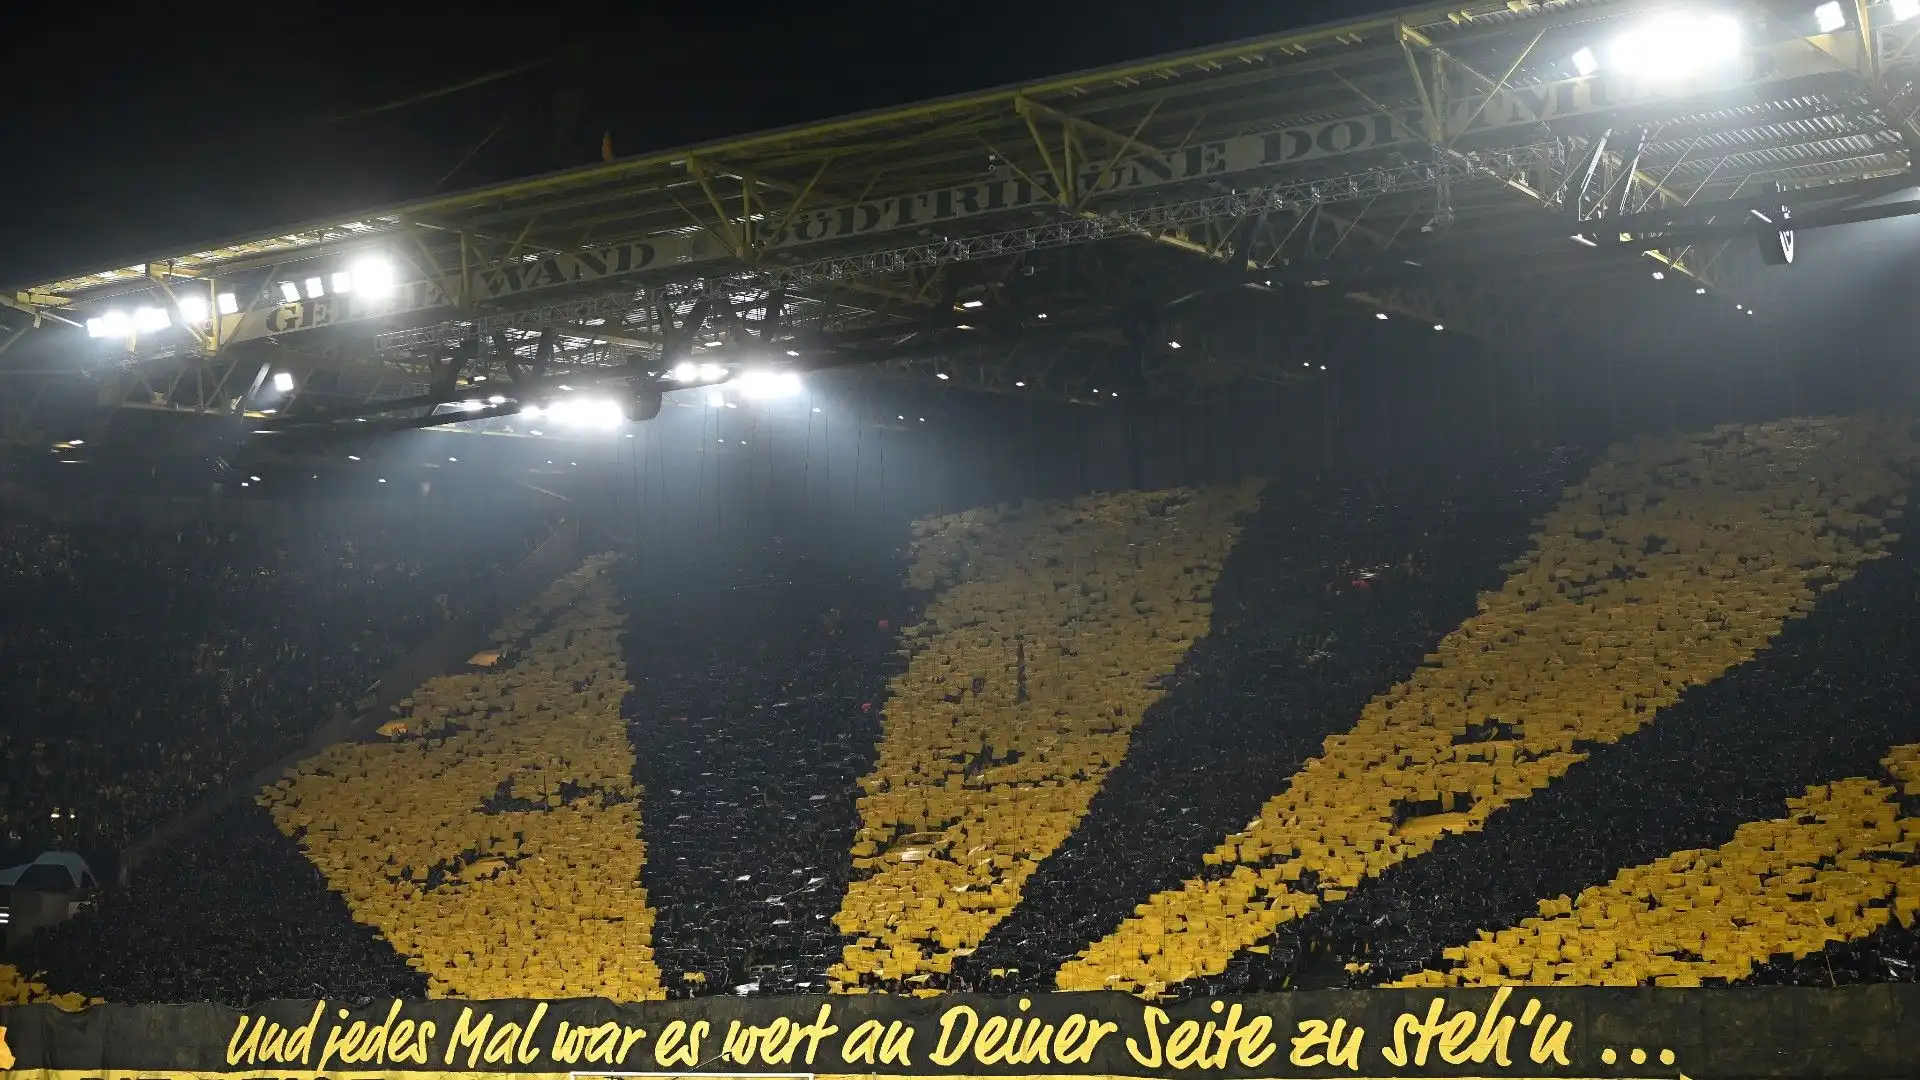 In occasione della partita tra Borussia Dortmund e Chelsea è stata allestita una coreografia super